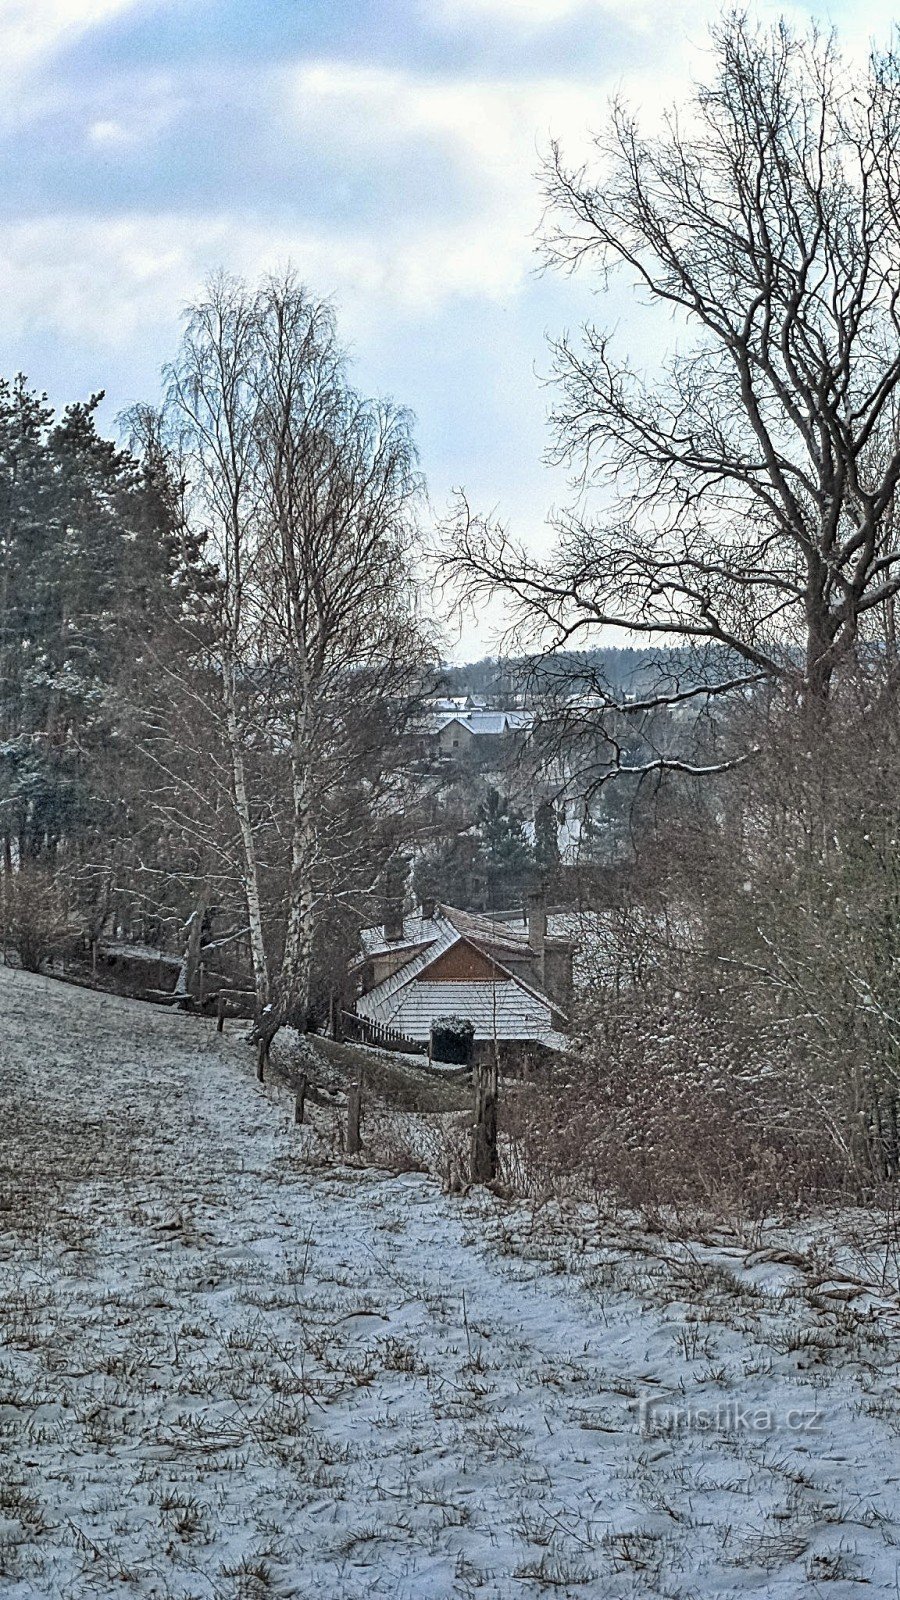 Podvrdy település 2. képe a tél varázslatos fátyolában